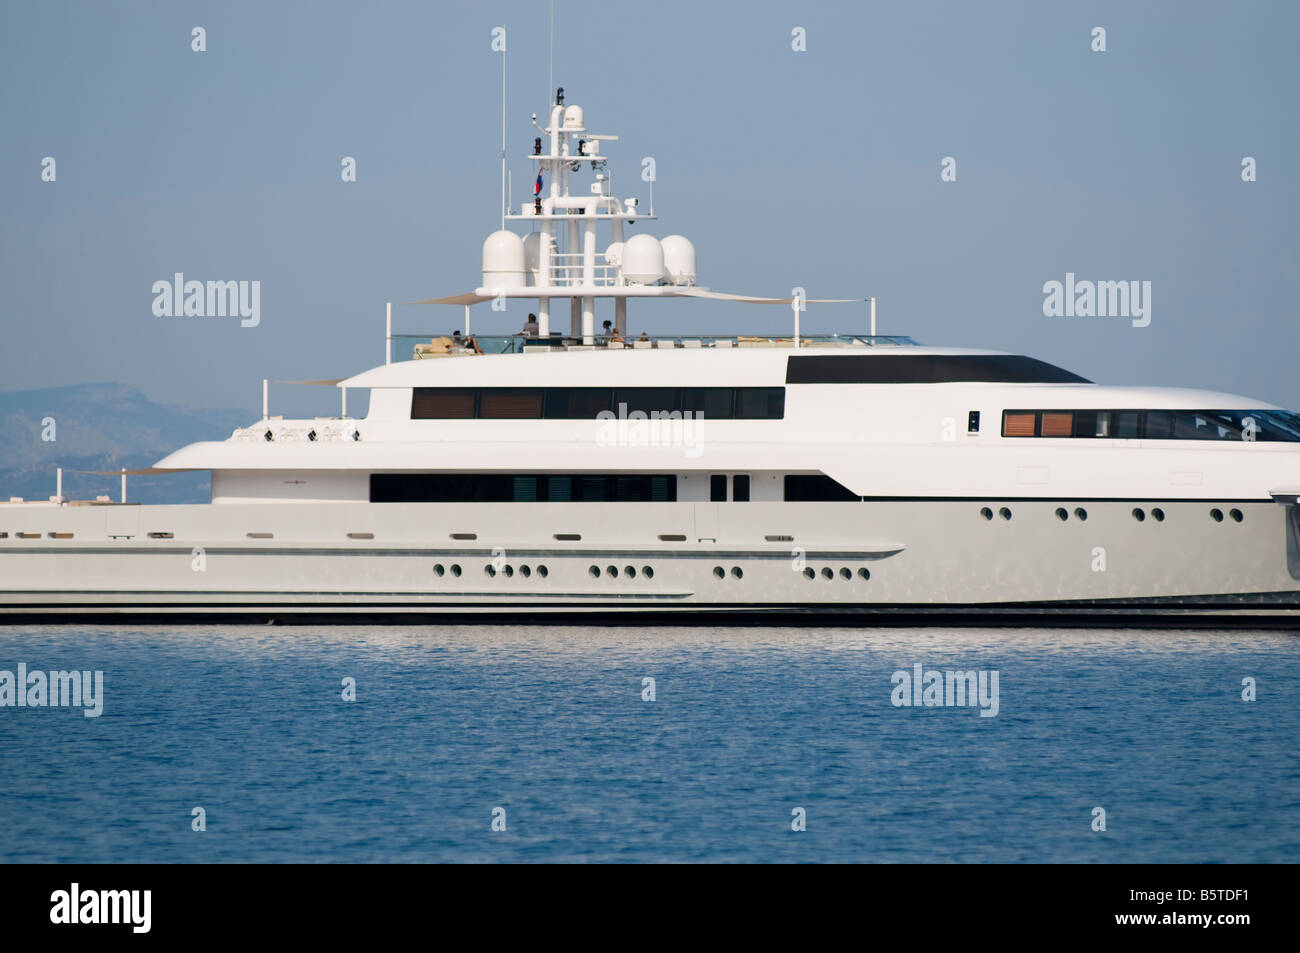 Luxury motor yacht en mer Adriatique Banque D'Images